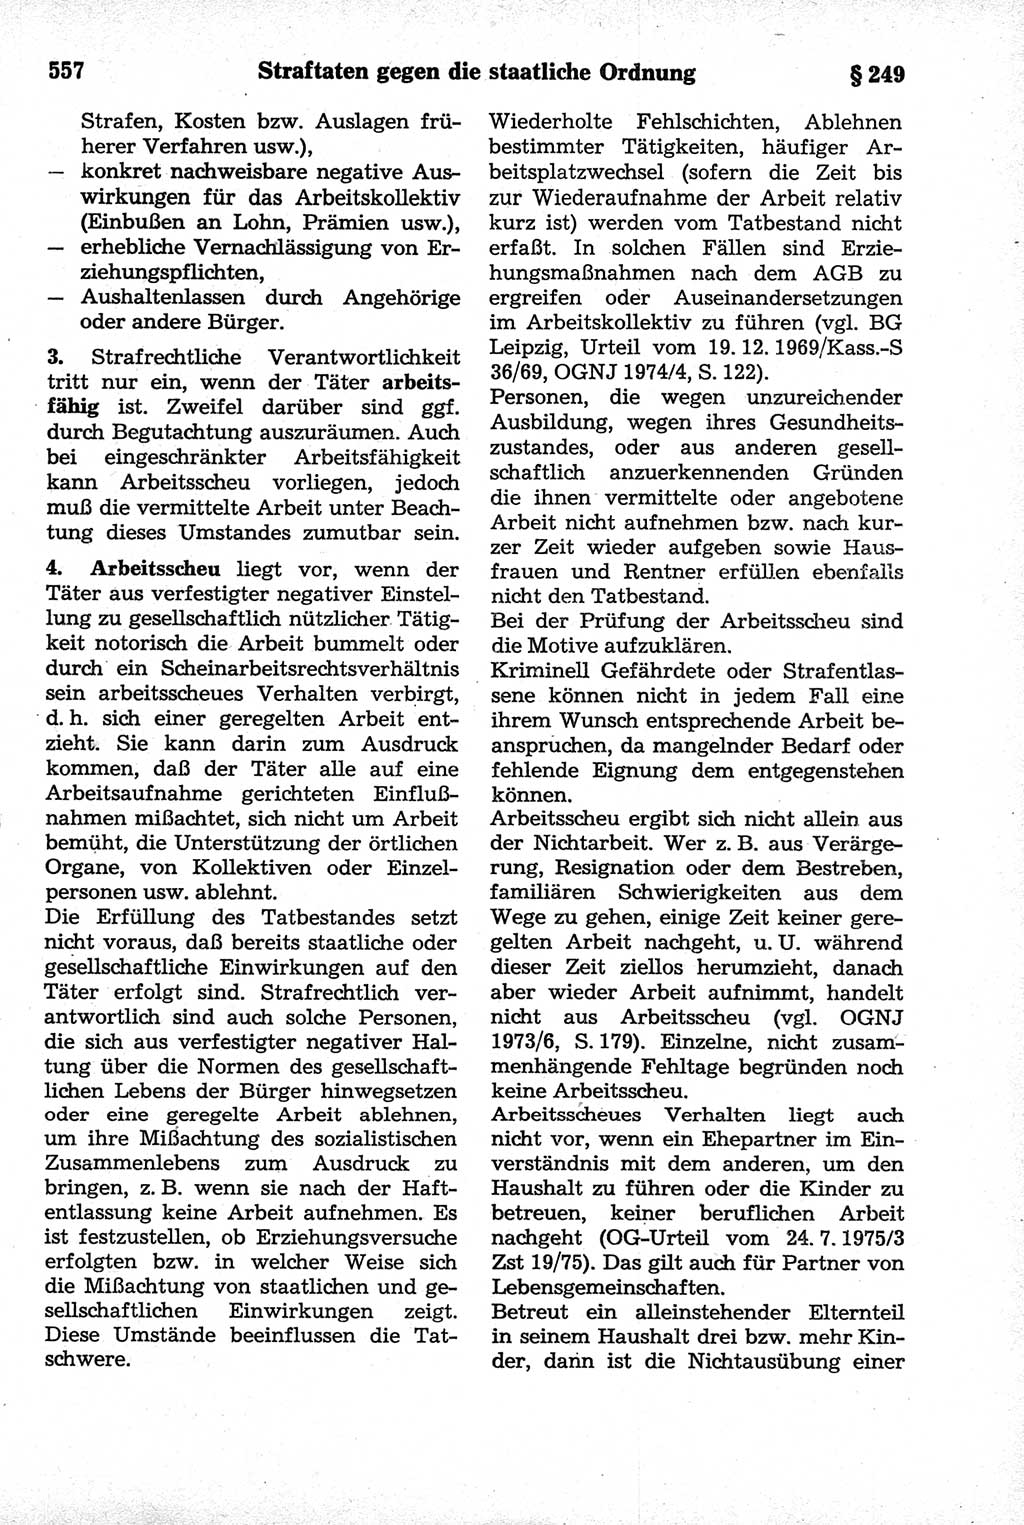 Strafrecht der Deutschen Demokratischen Republik (DDR), Kommentar zum Strafgesetzbuch (StGB) 1981, Seite 557 (Strafr. DDR Komm. StGB 1981, S. 557)